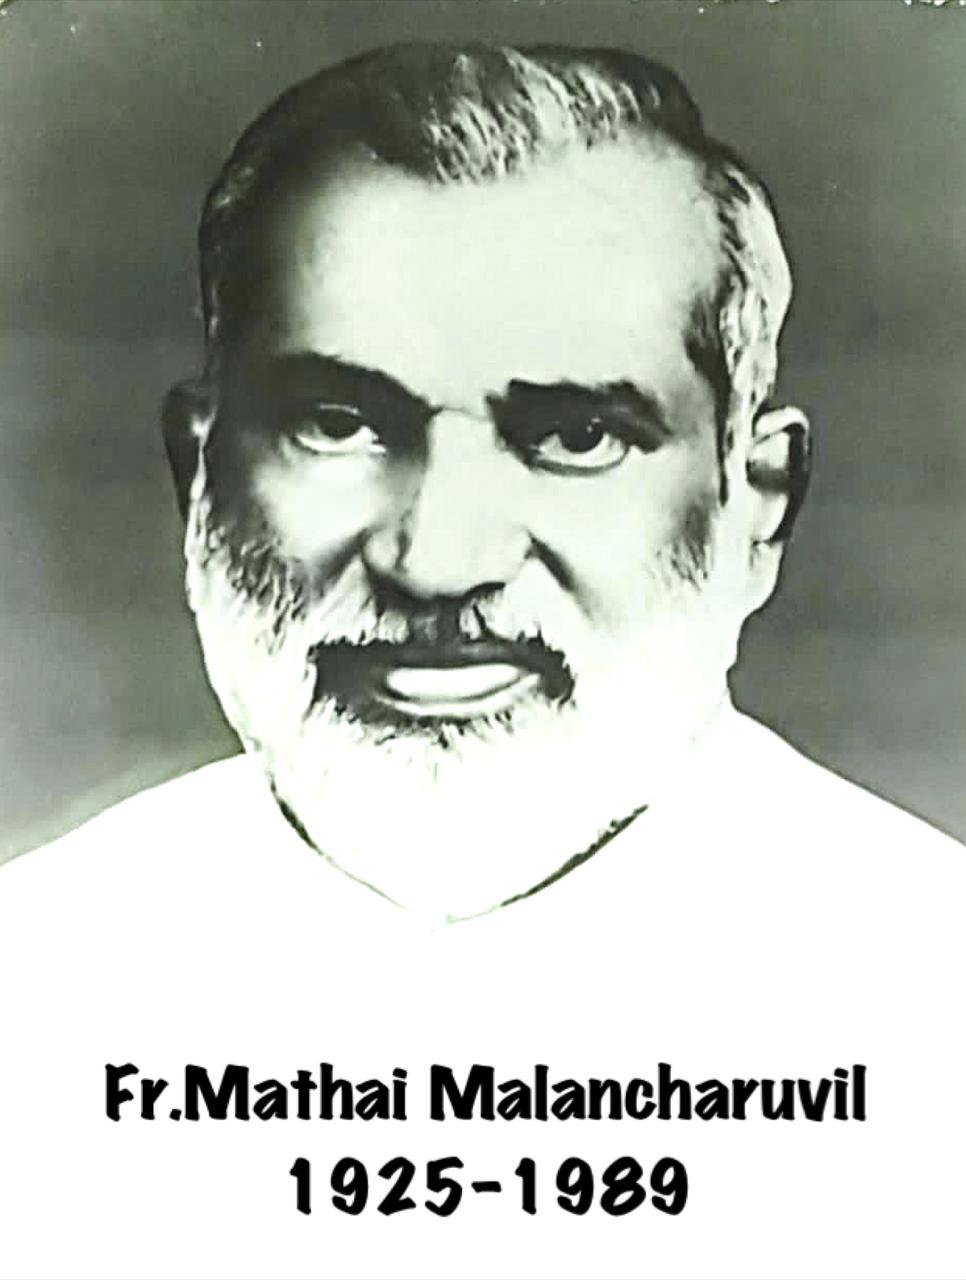 Rev. Fr Mathai Malancharuvil